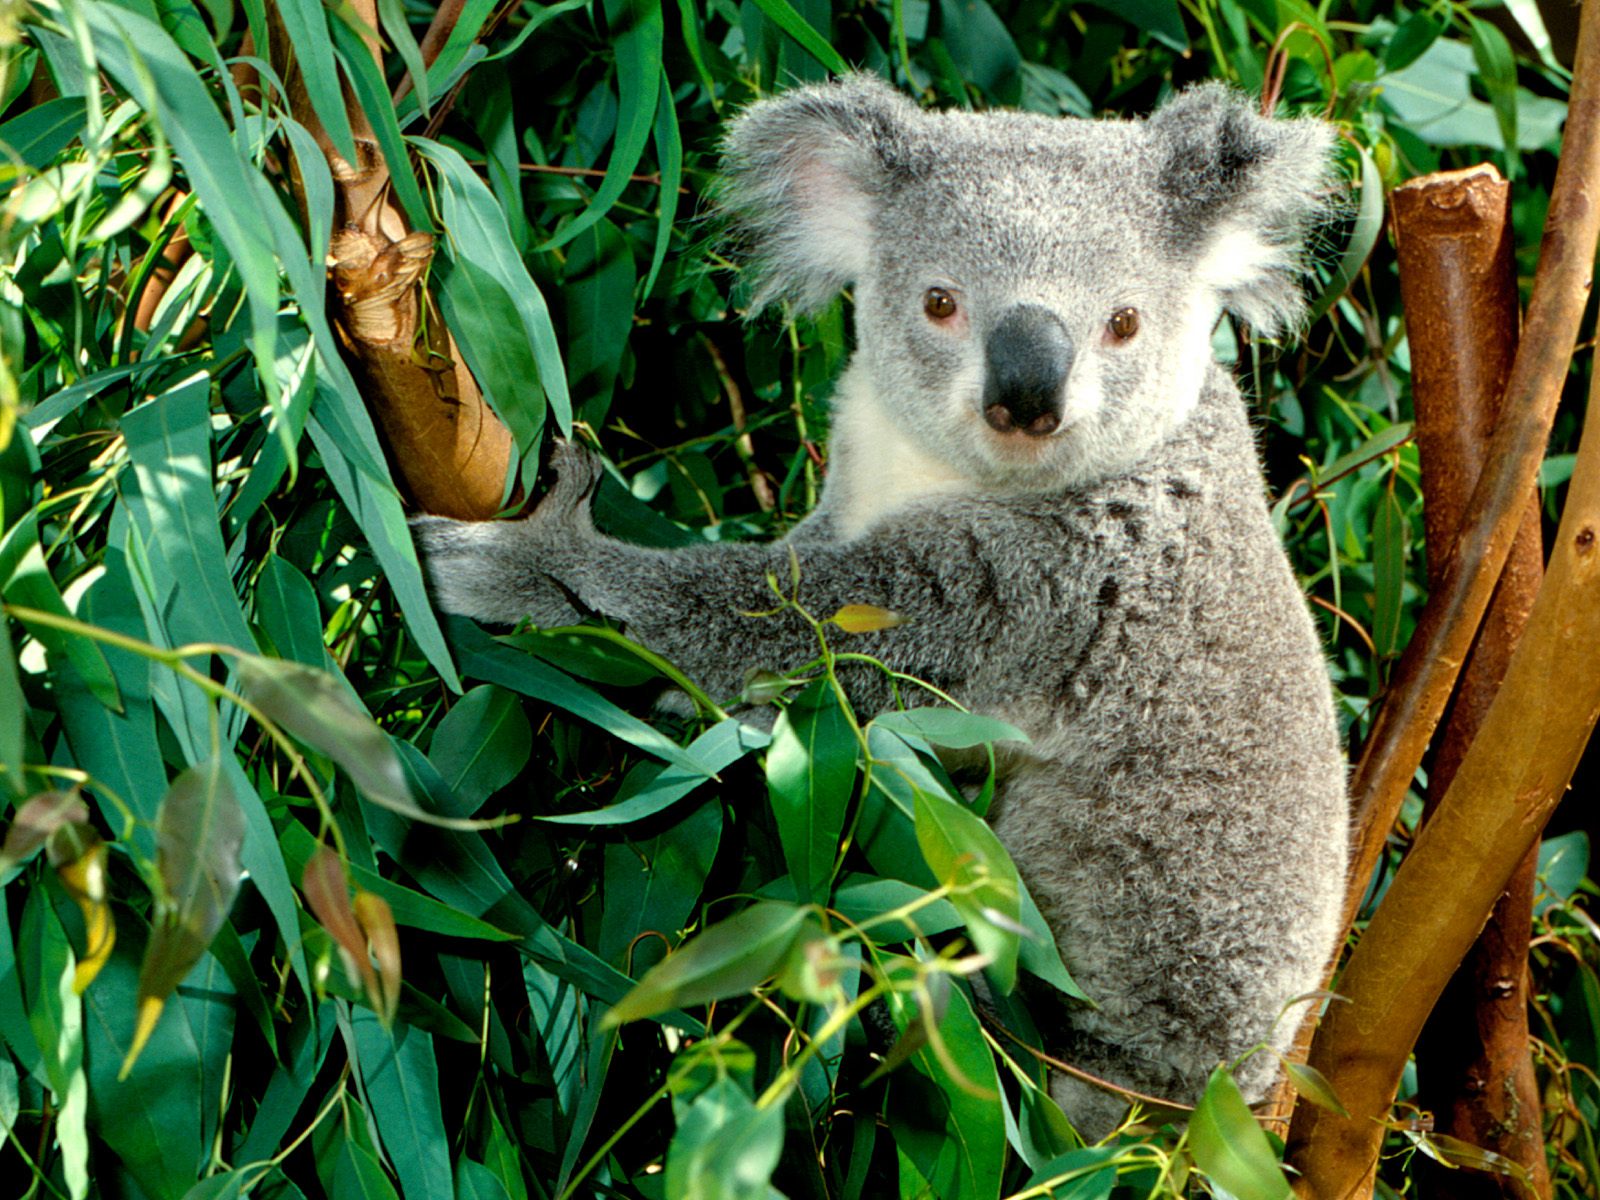 Avustralyada Okaliptüs ağacının 600den fazla türü olmasına karşı, koalalar bunların sadece 35 kadarını kullanırlar. Okaliptüs ağacı bir koala için yalnız barınak değil, aynı zamanda önemli bir besin kaynağıdır. Hatta okaliptüs yapraklarının koalanın yegane gıdası olduğunu söylemek yanlış olmaz.